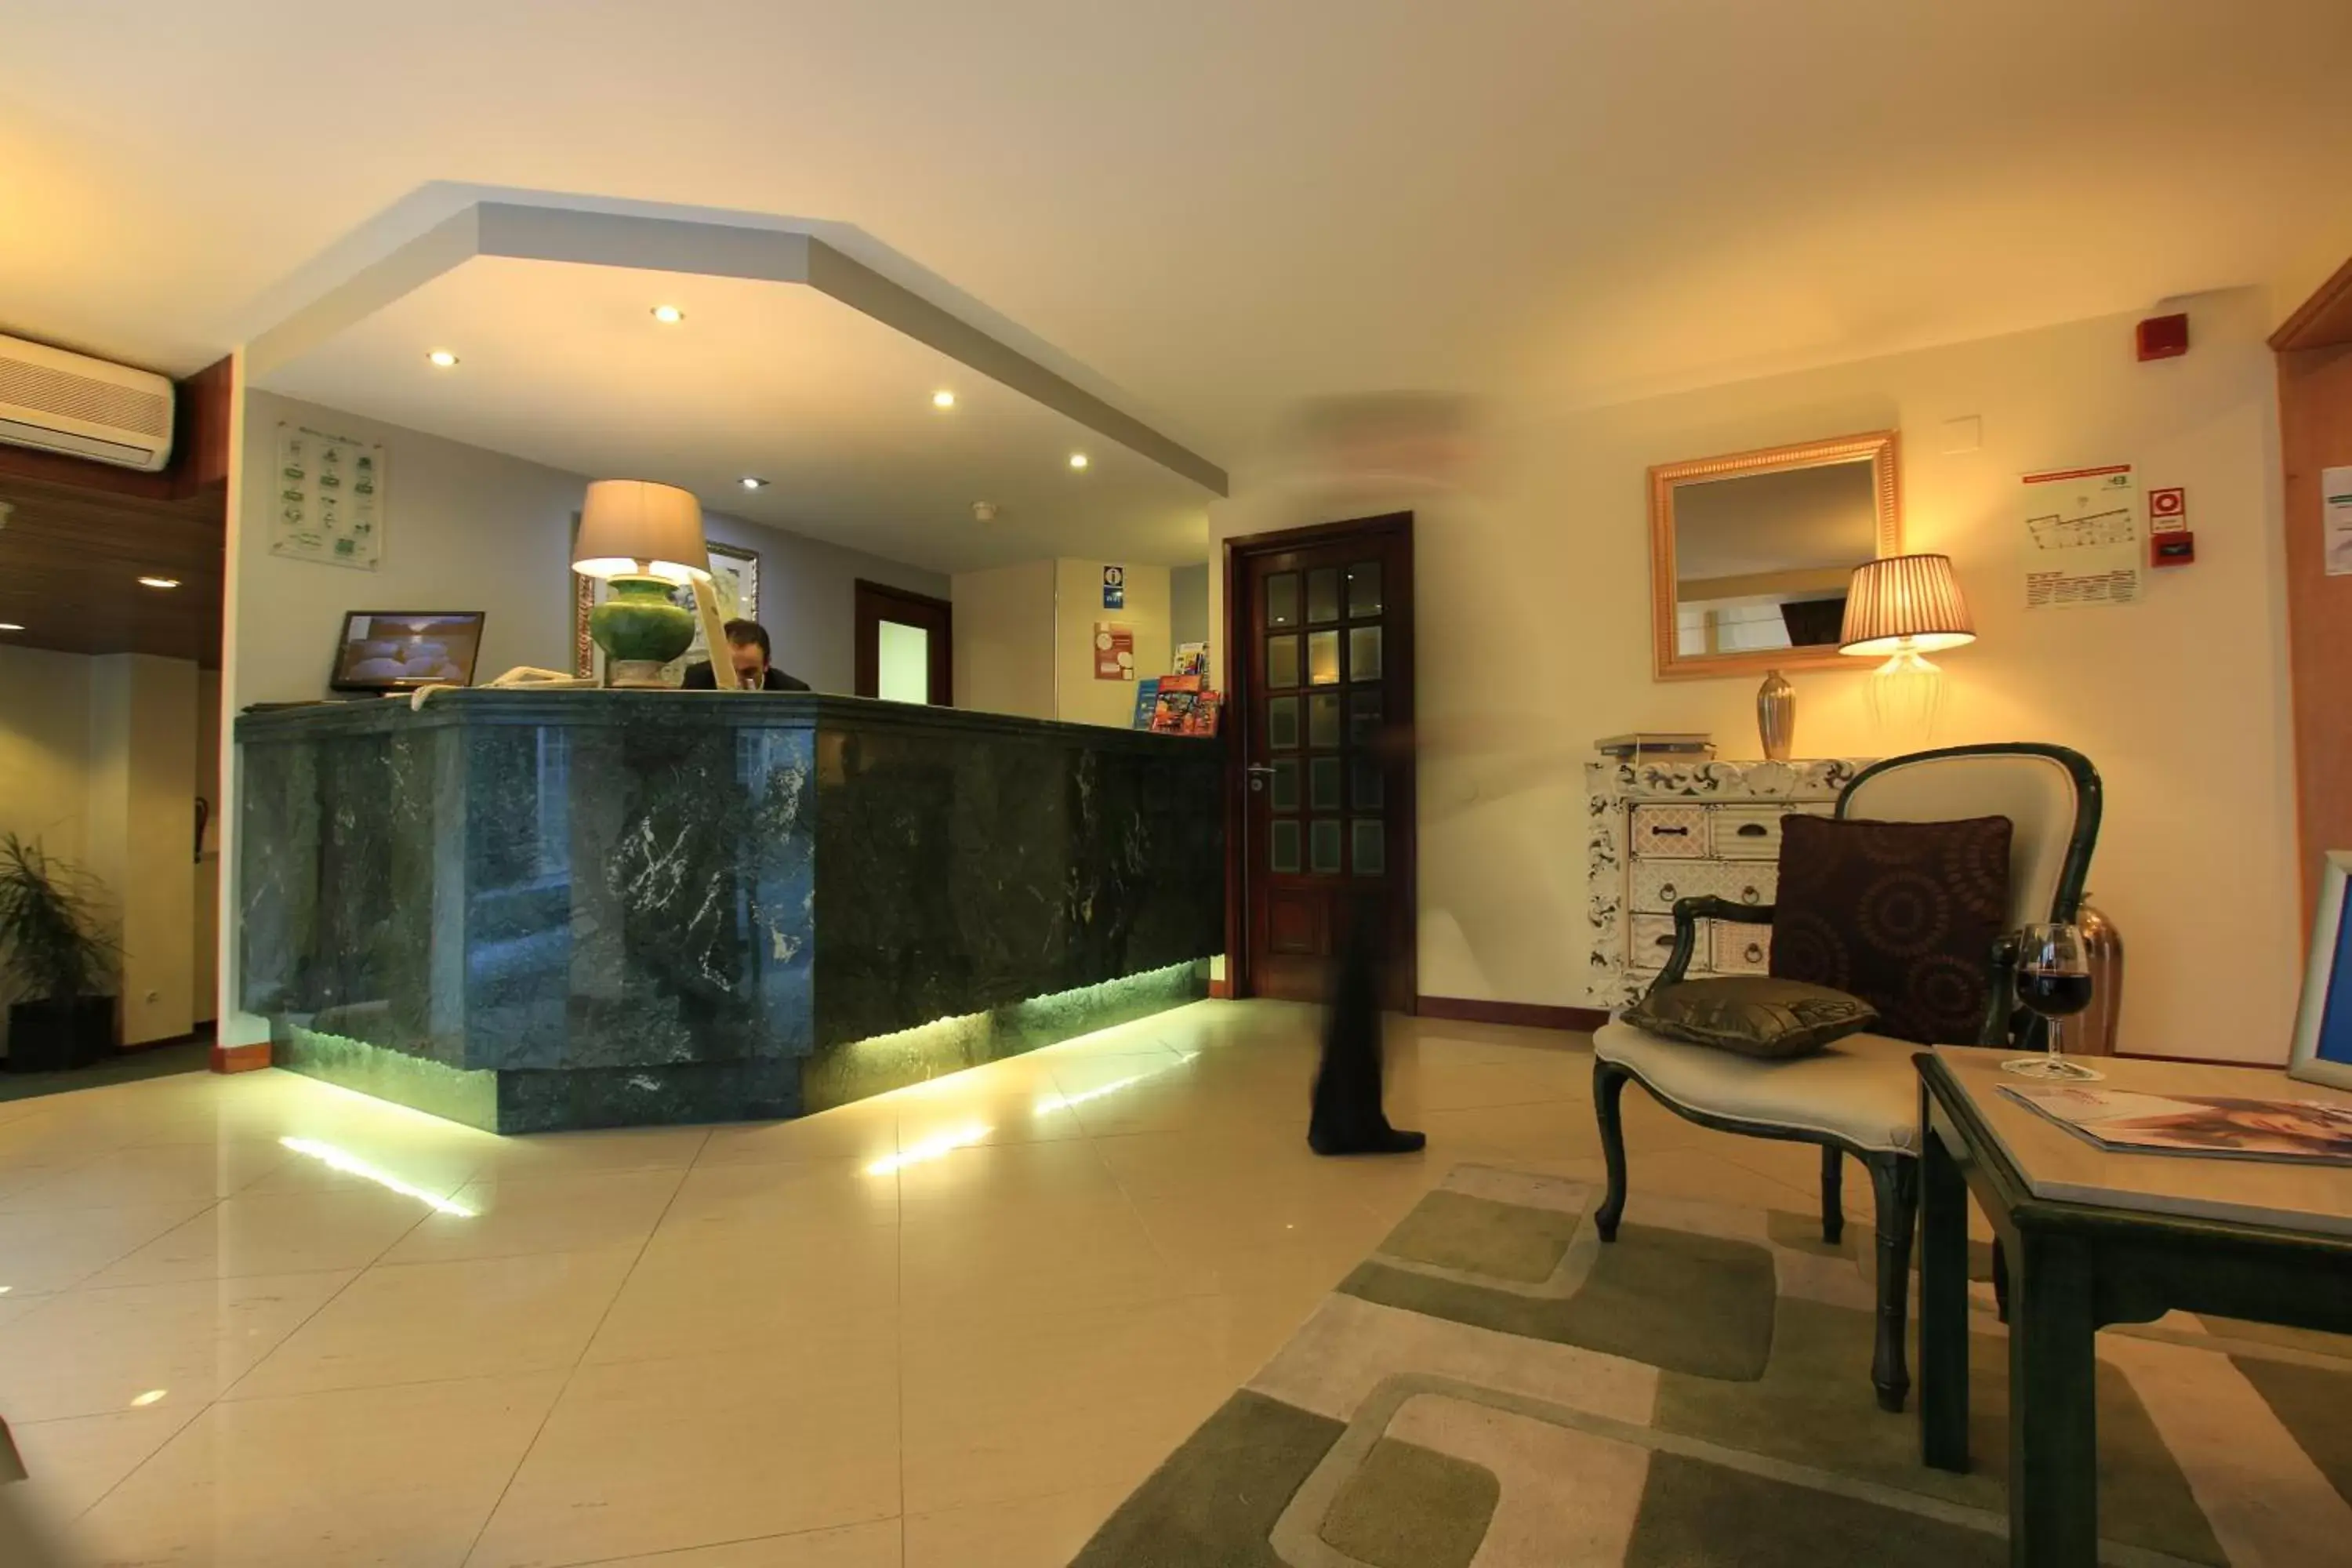 Lobby or reception in Hotel da Bolsa